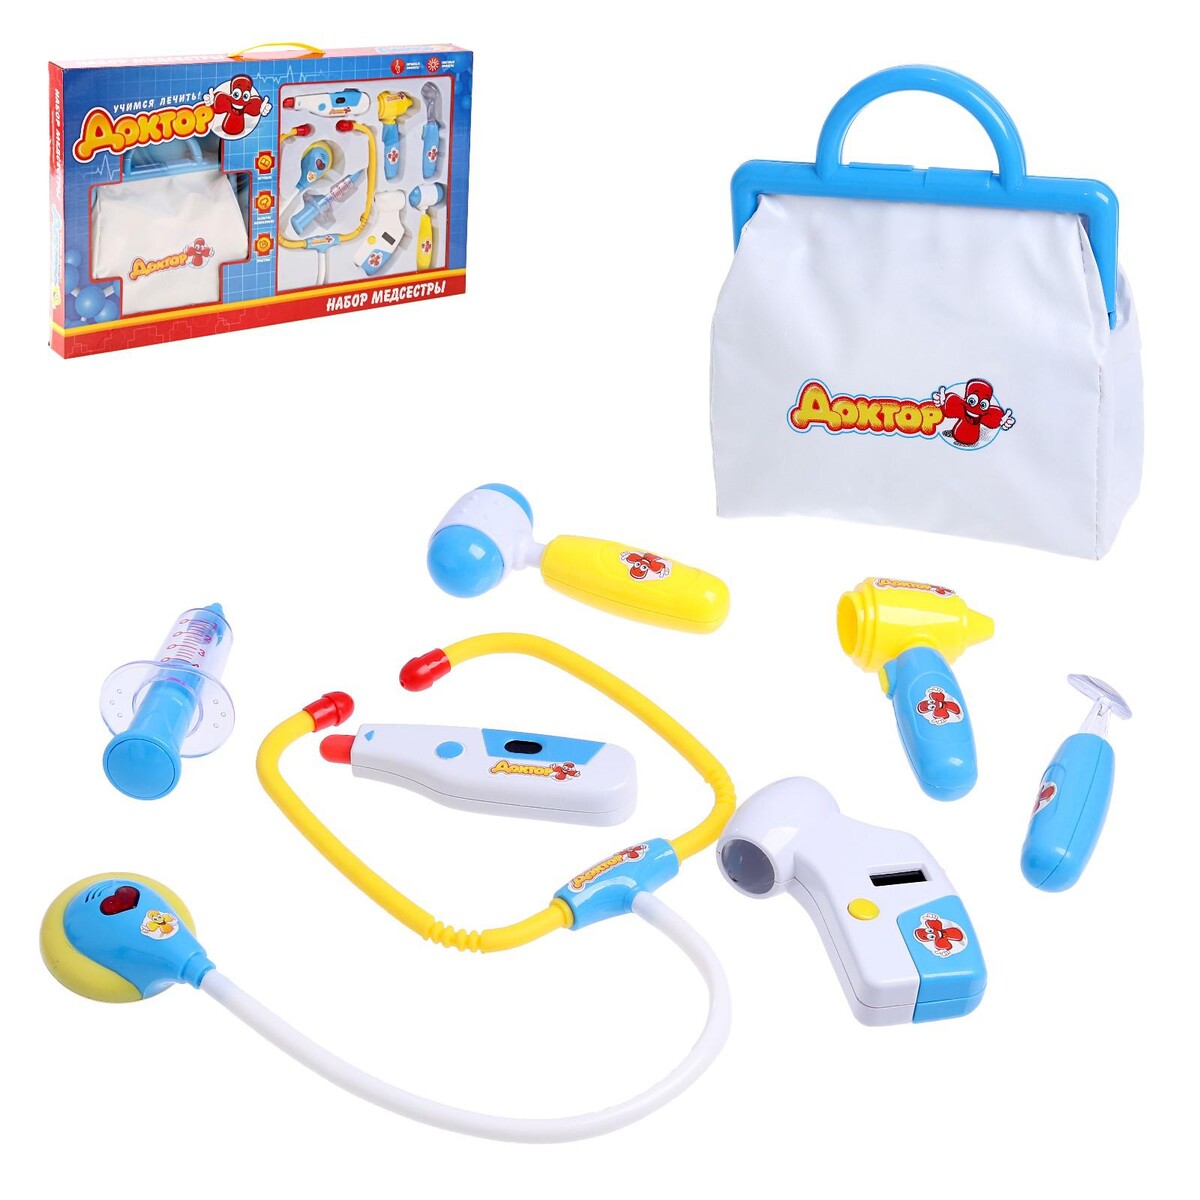 Набор медсестры, 8 предметов с сумкой, свет, звук прозрачный паровозик gear train свет звук эффекты toy electric geartrain